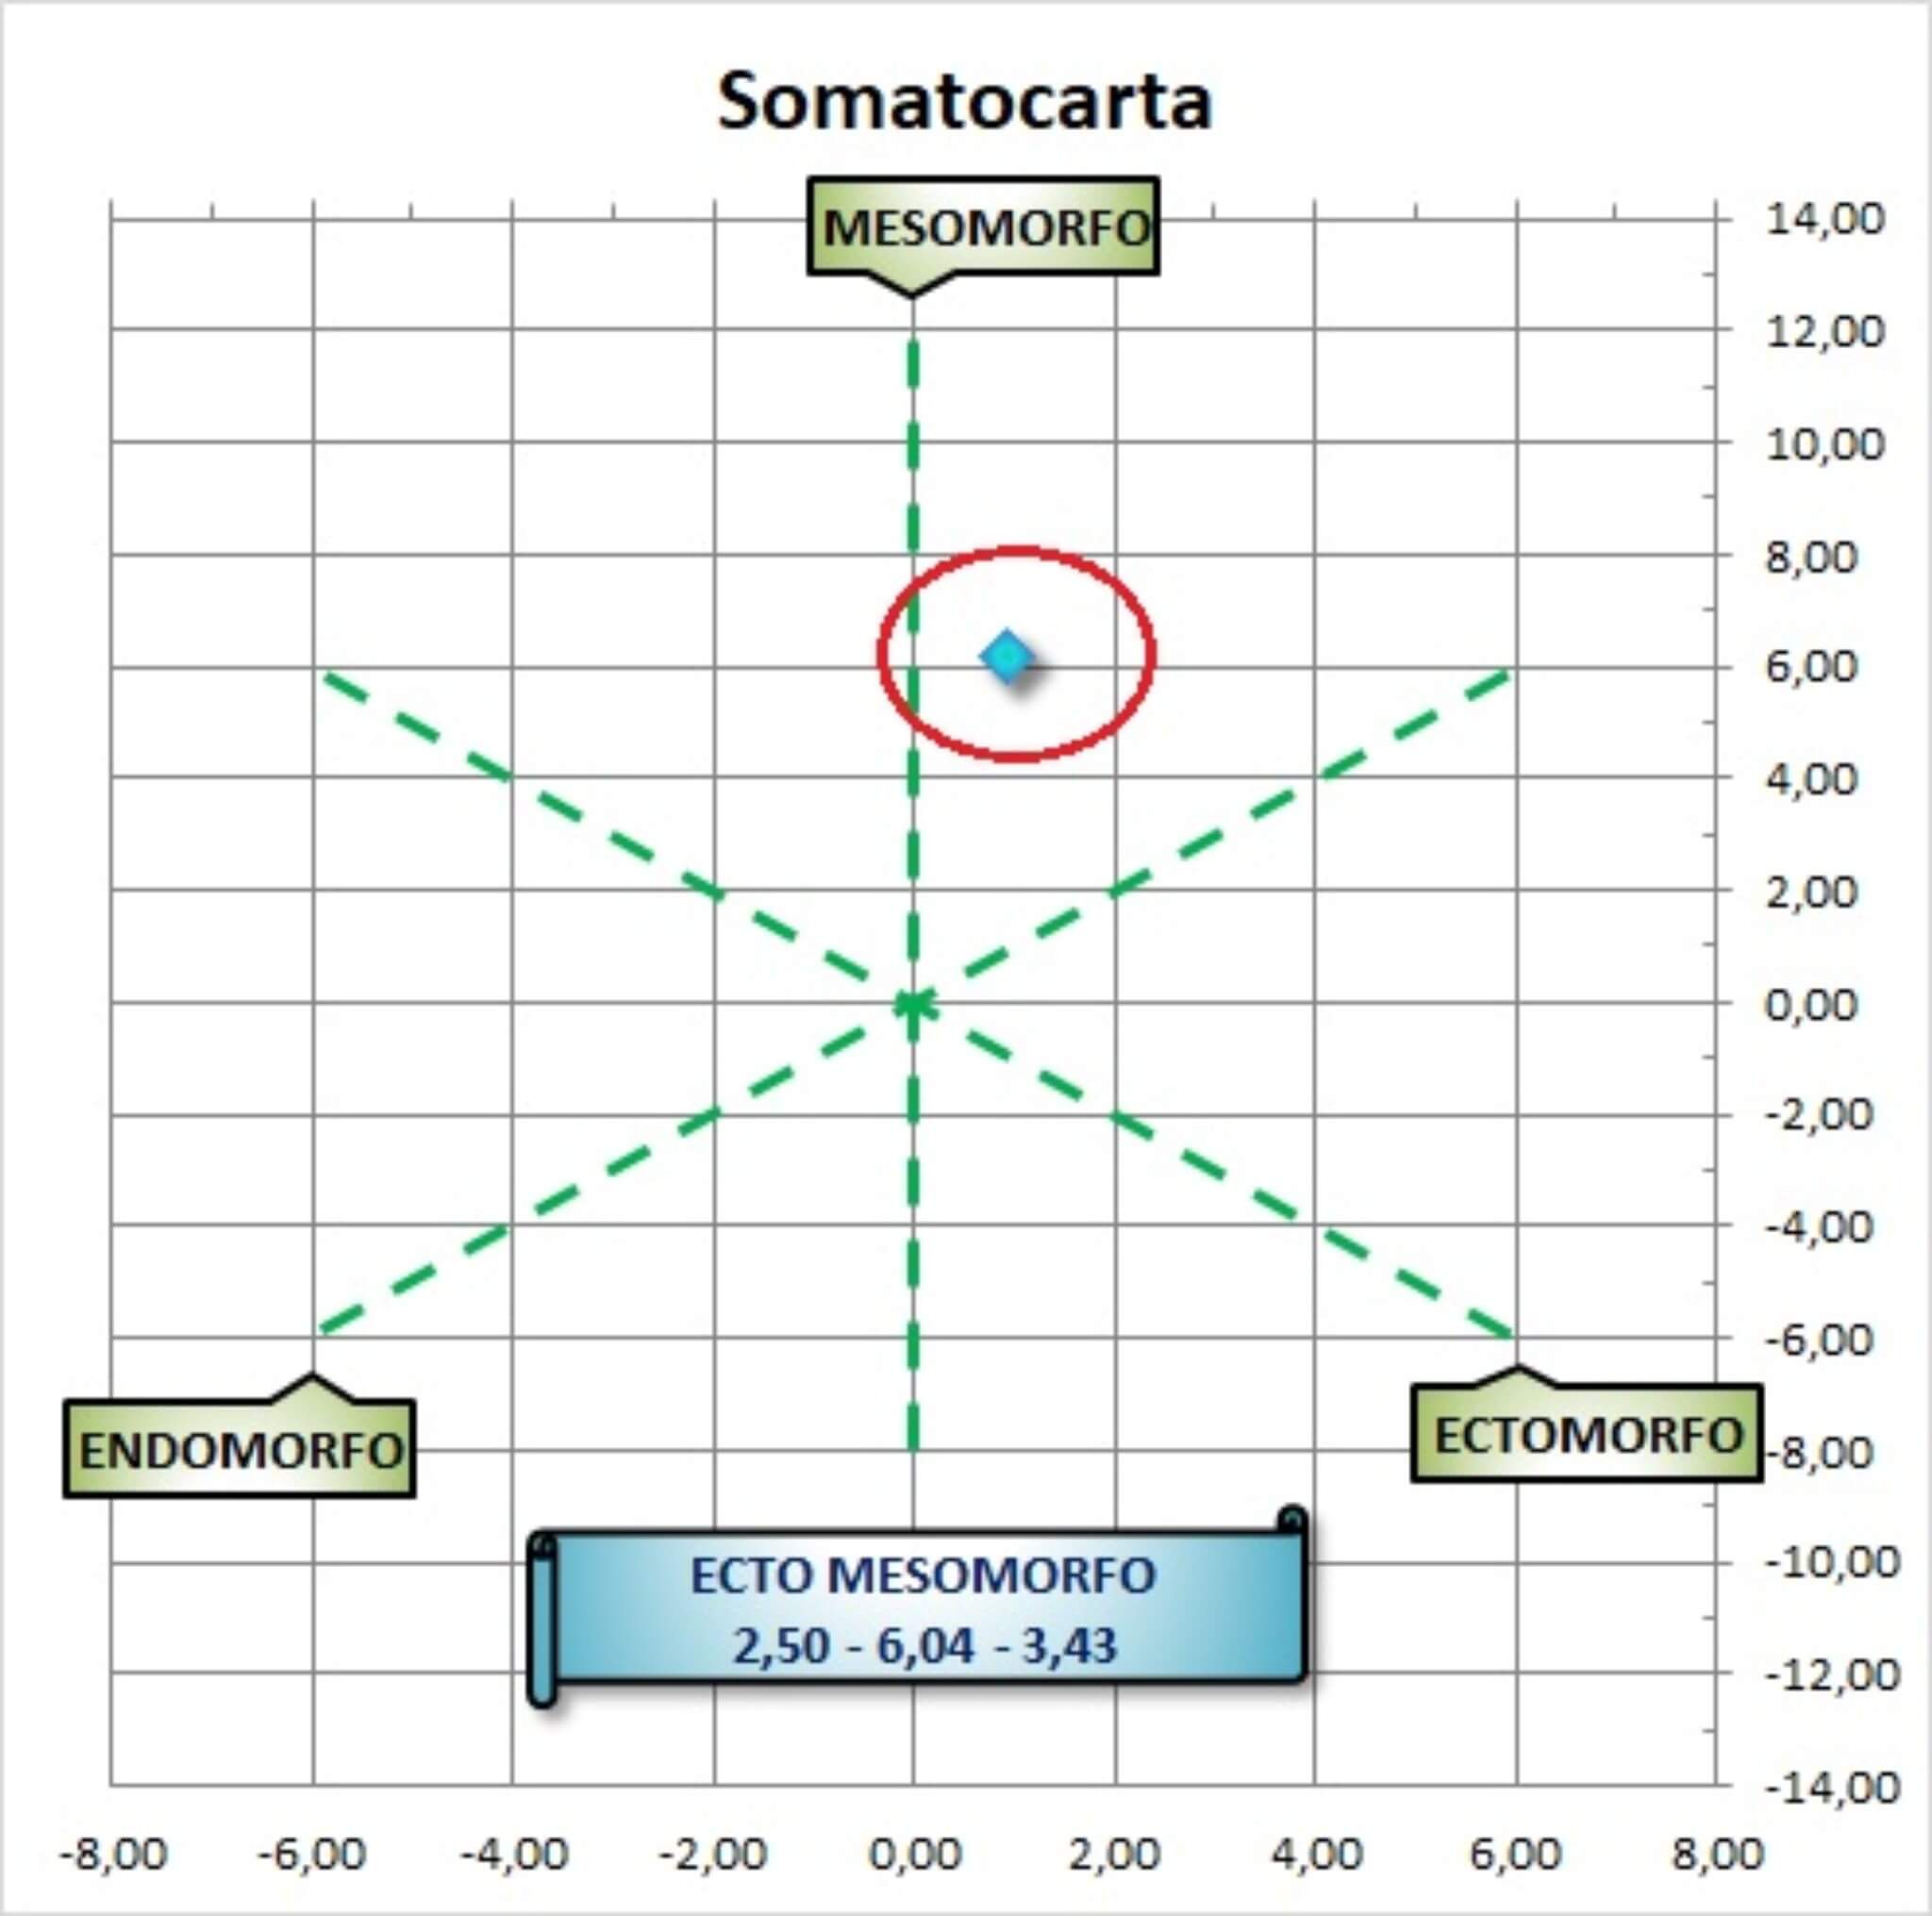 somatocarta e somatotipo: esempio pratico